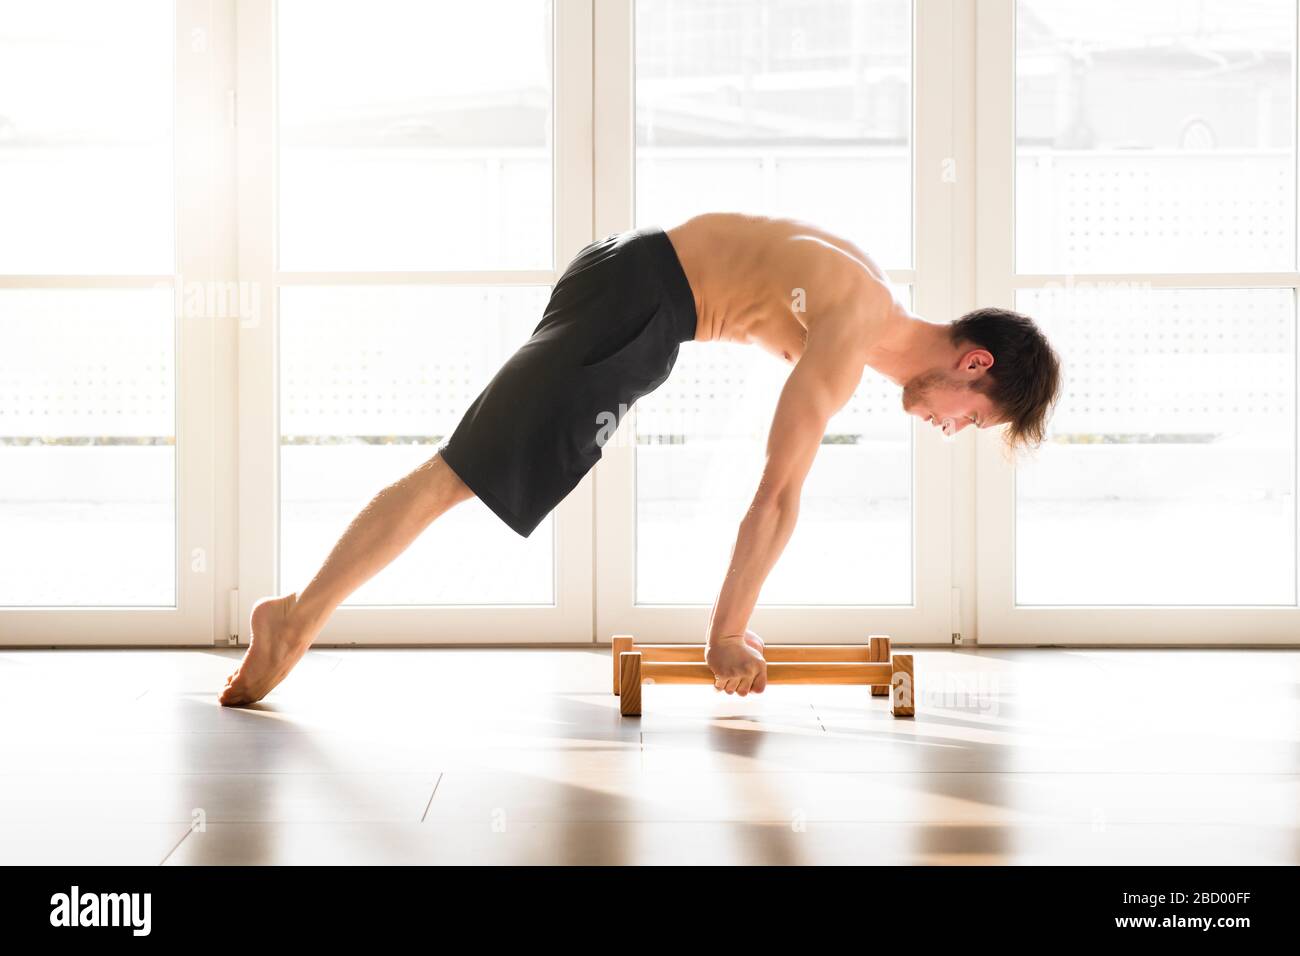 Ajuste hombre joven haciendo un planche calienthenics pose equilibrio en  los brazos rectos en barras del piso con el cuerpo levantado en un gimnasio  alto de la llave en una salud y